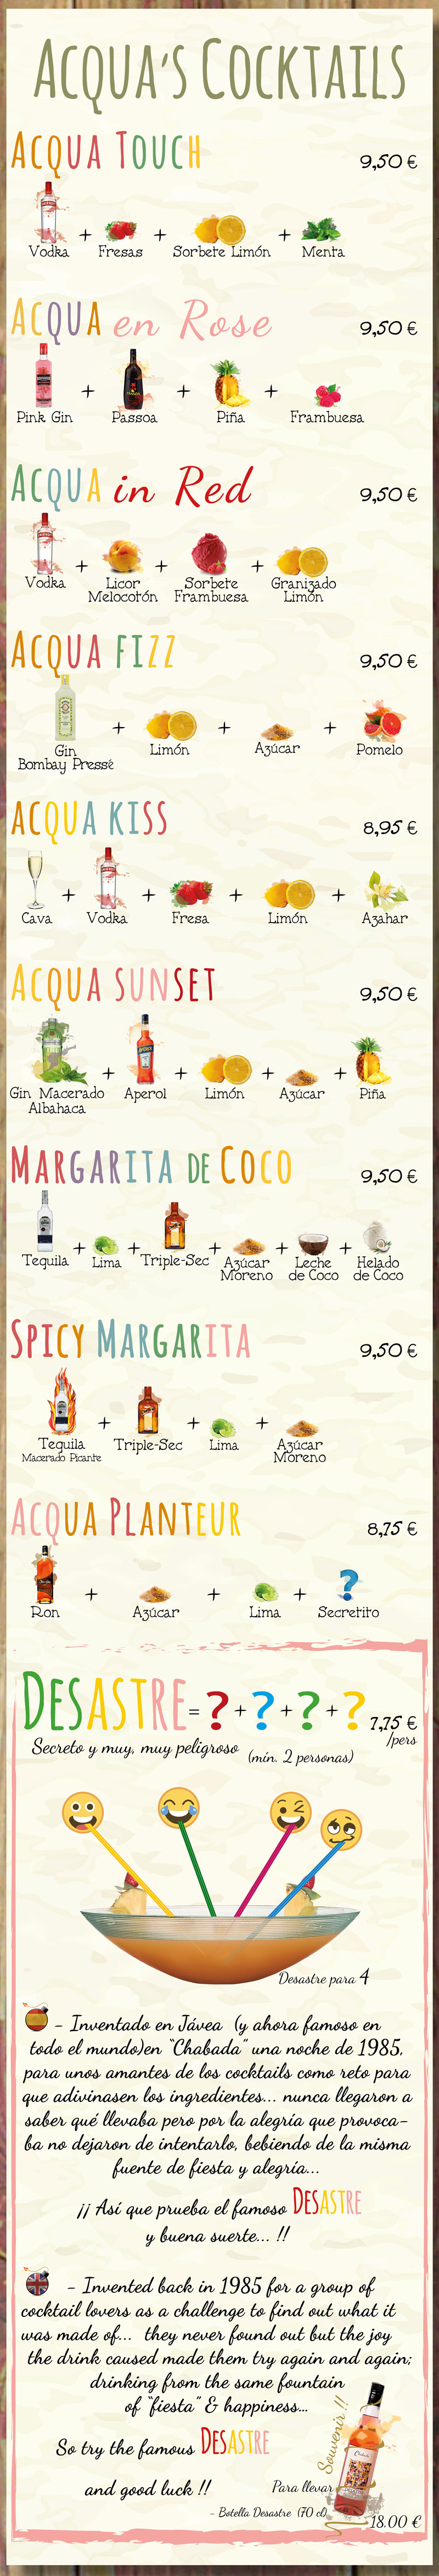 Cocktail1 Acqua